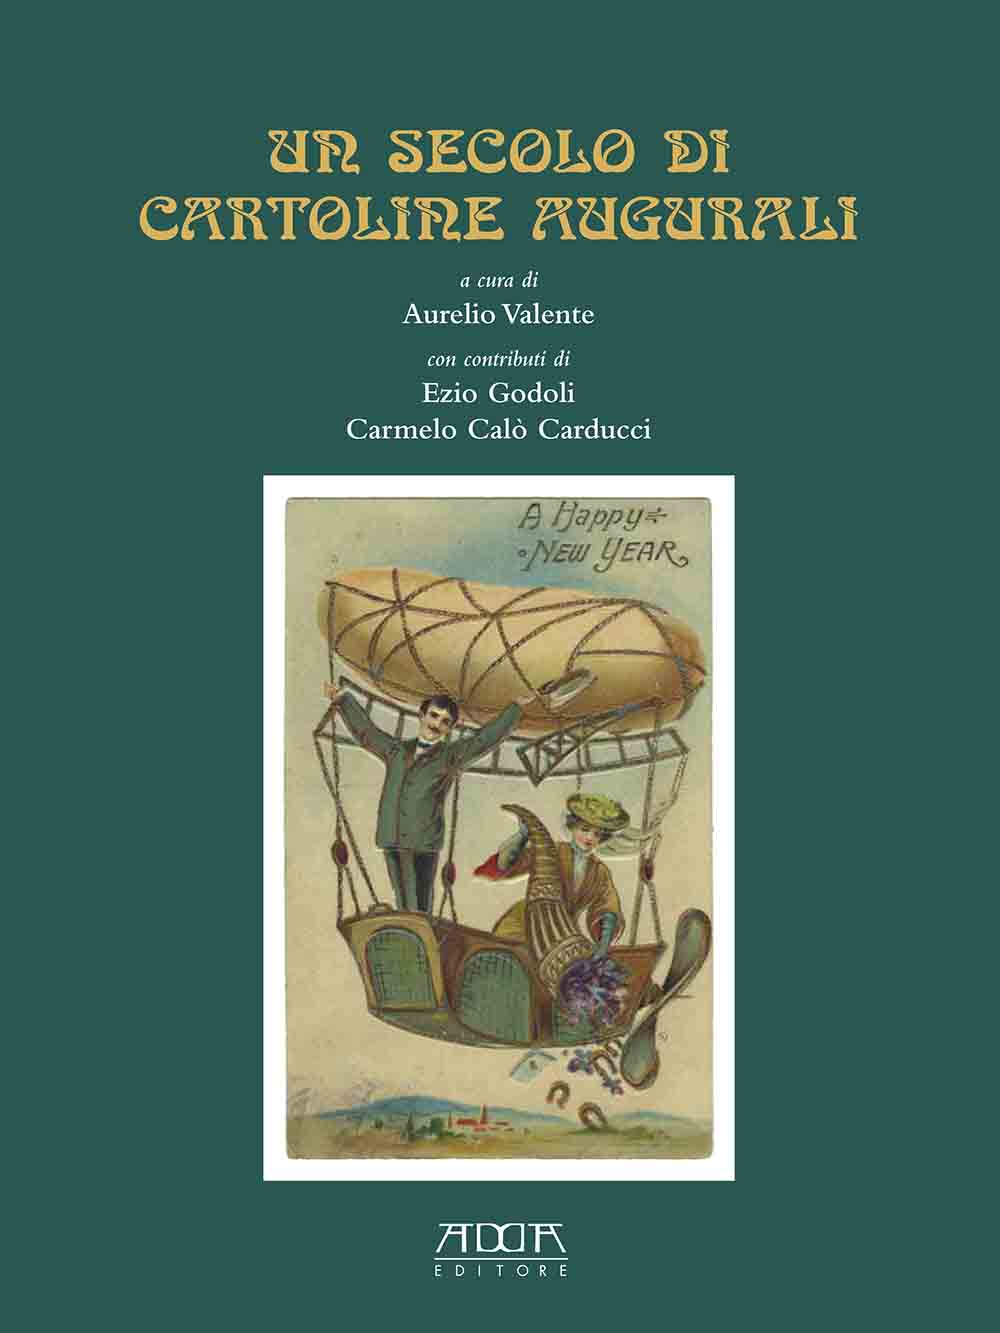 Copertina Libro Un secolo di cartoline augurali di Aurelio Valente (Fonte Ente CRF)